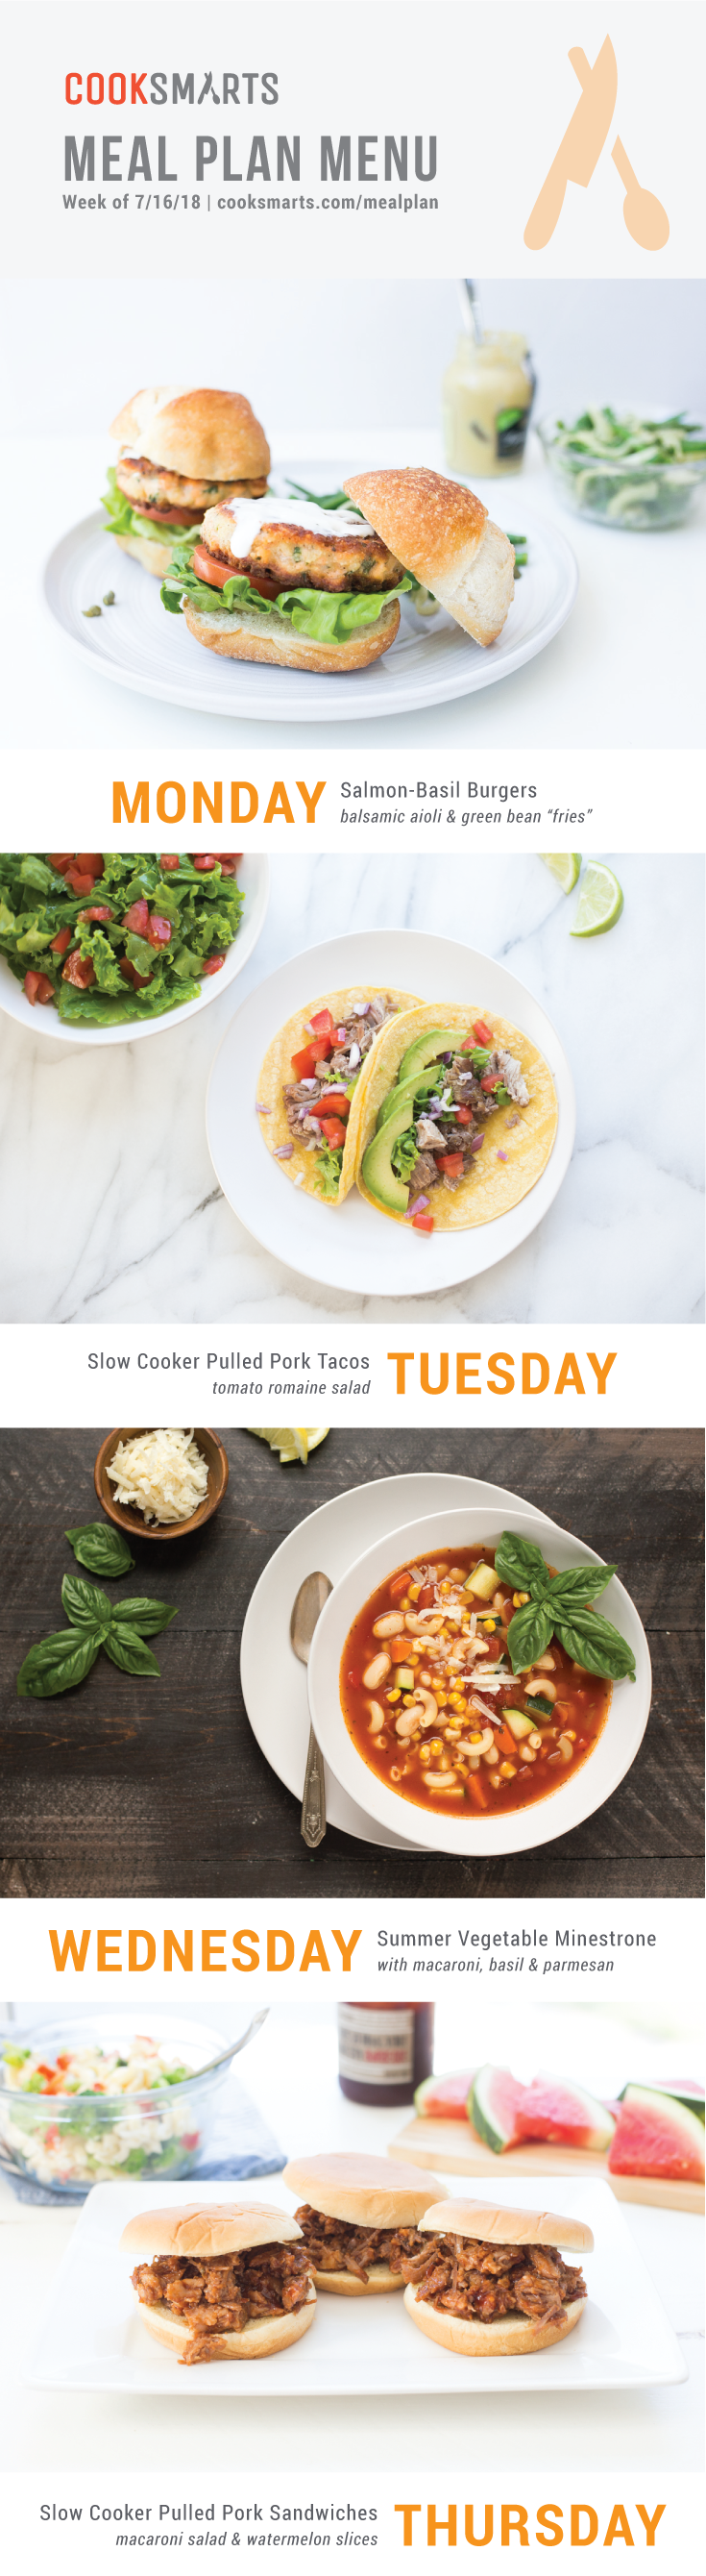 Weekly Meal Planner | Menu for Week of 7/16/18 via Cook Smarts